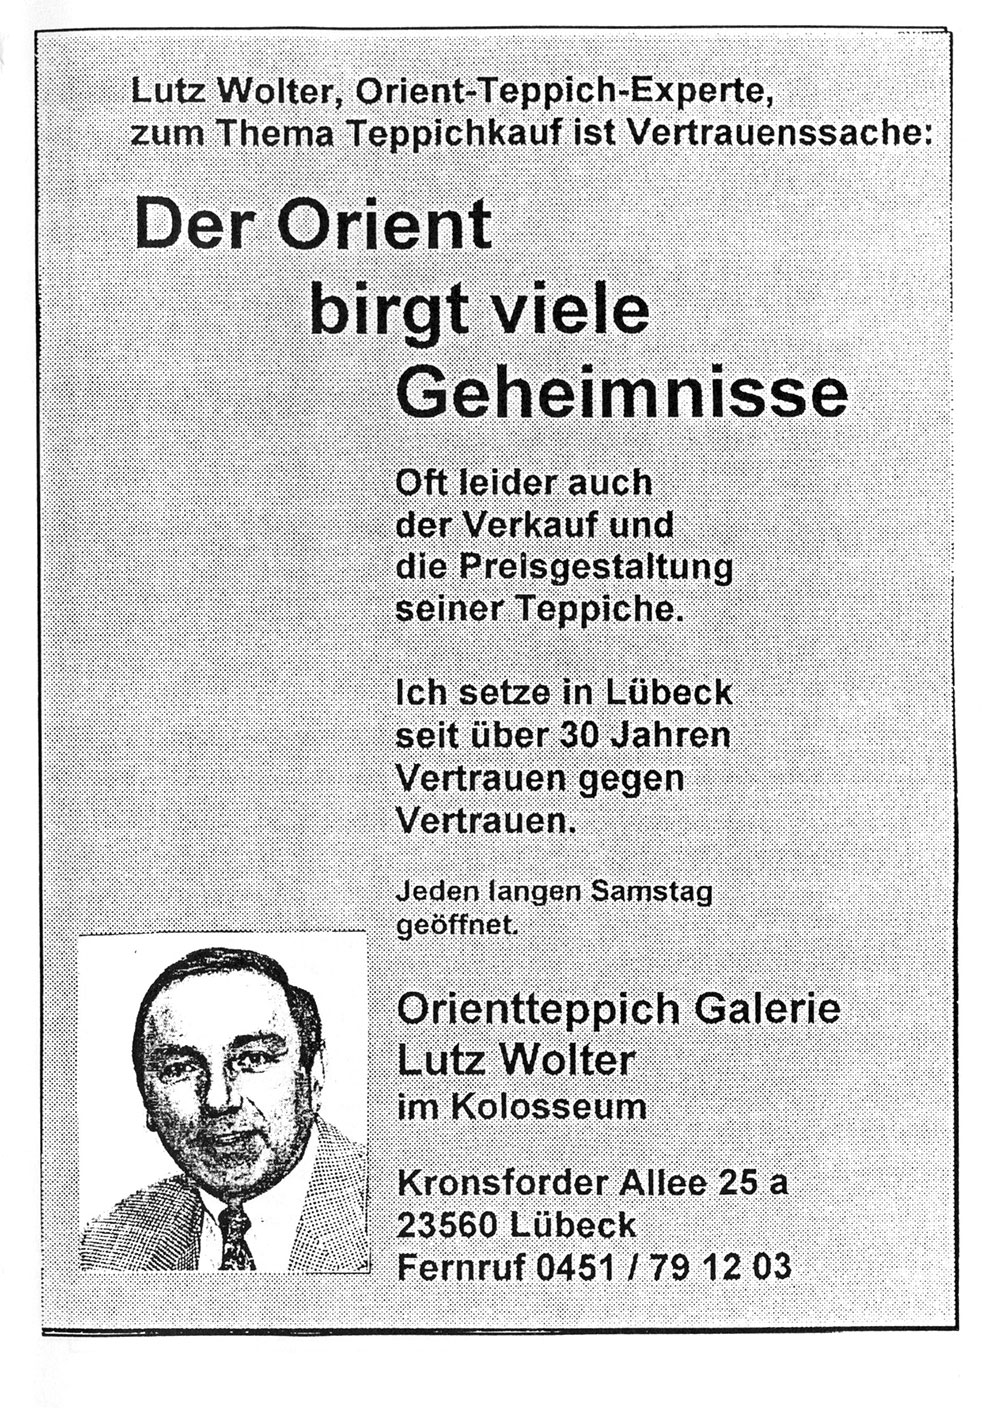 Der PHÖNIX EXPRESS, Heft 92, v. 17.8.1997